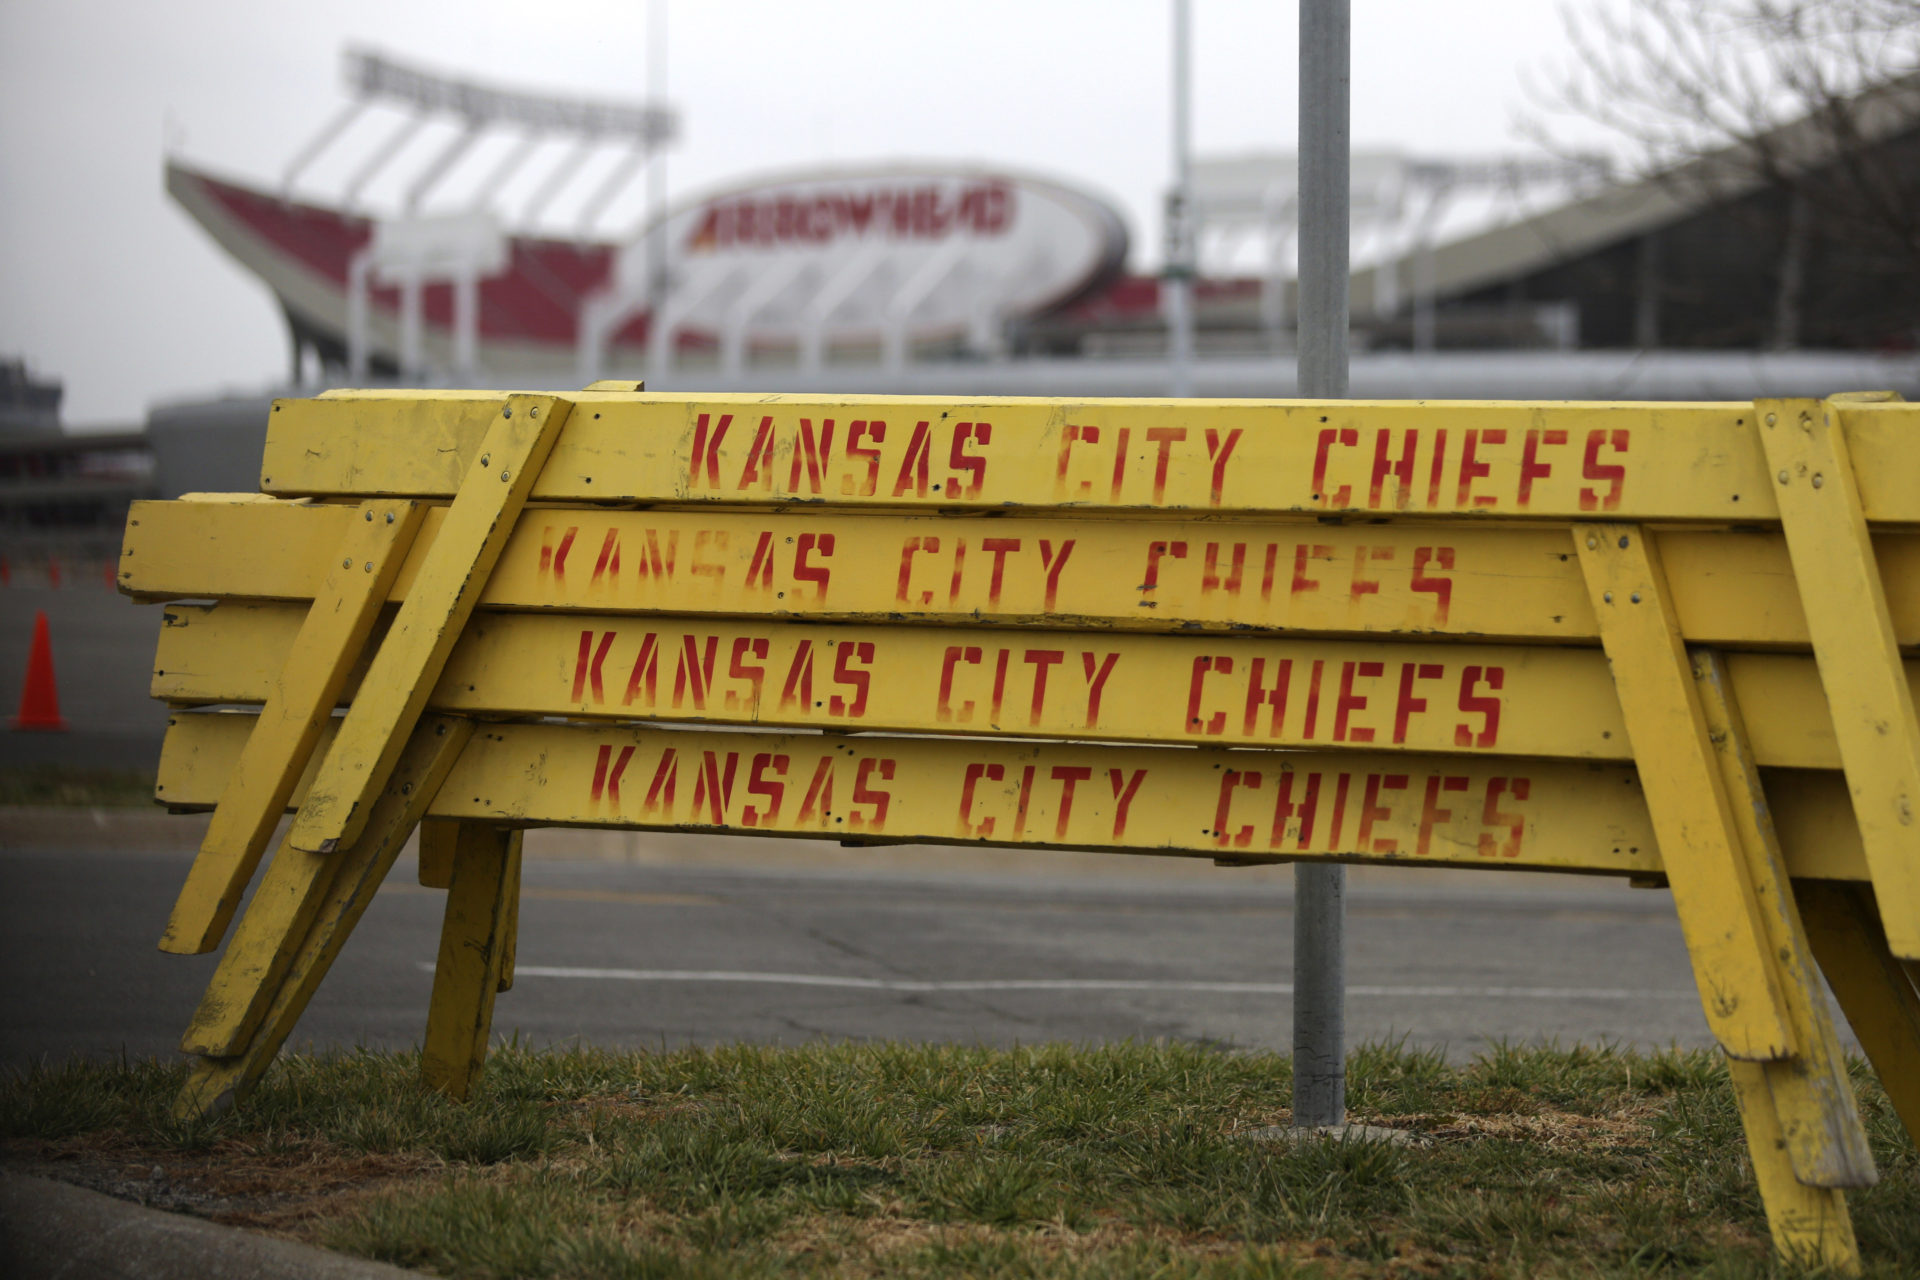 Kansas City Chiefs Player Jovan Belcher Kills Girlfriend, Then Himself At Team Facility